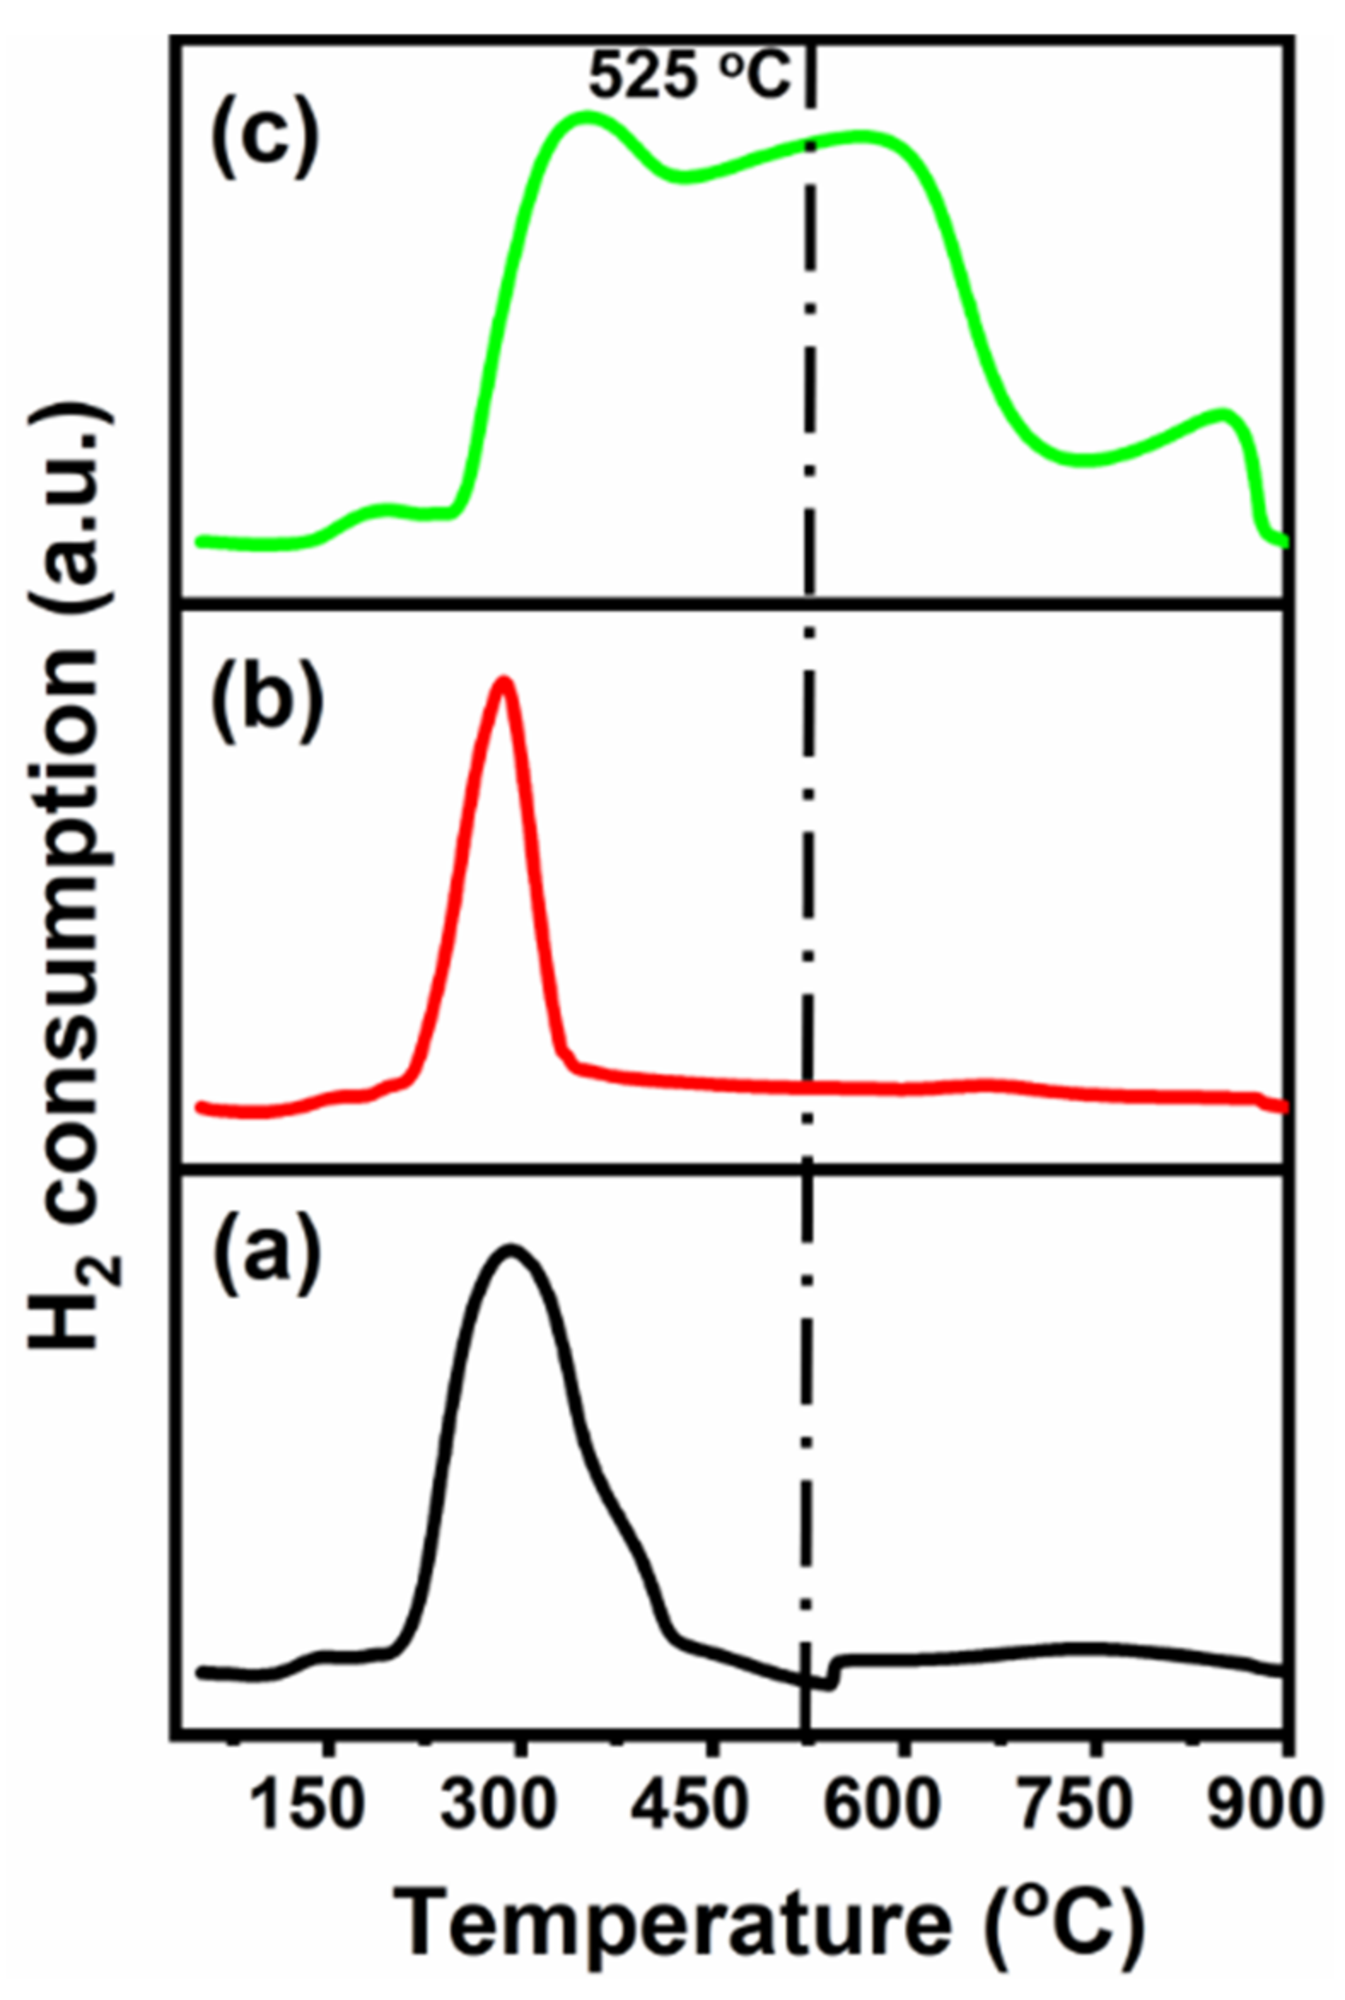 H2-TPR profiles of (a) CeNiO3, (b) Ce0.8Sr0.2NiO3, and (c) Ce0.6Sr0.4NiO3 perovskites.